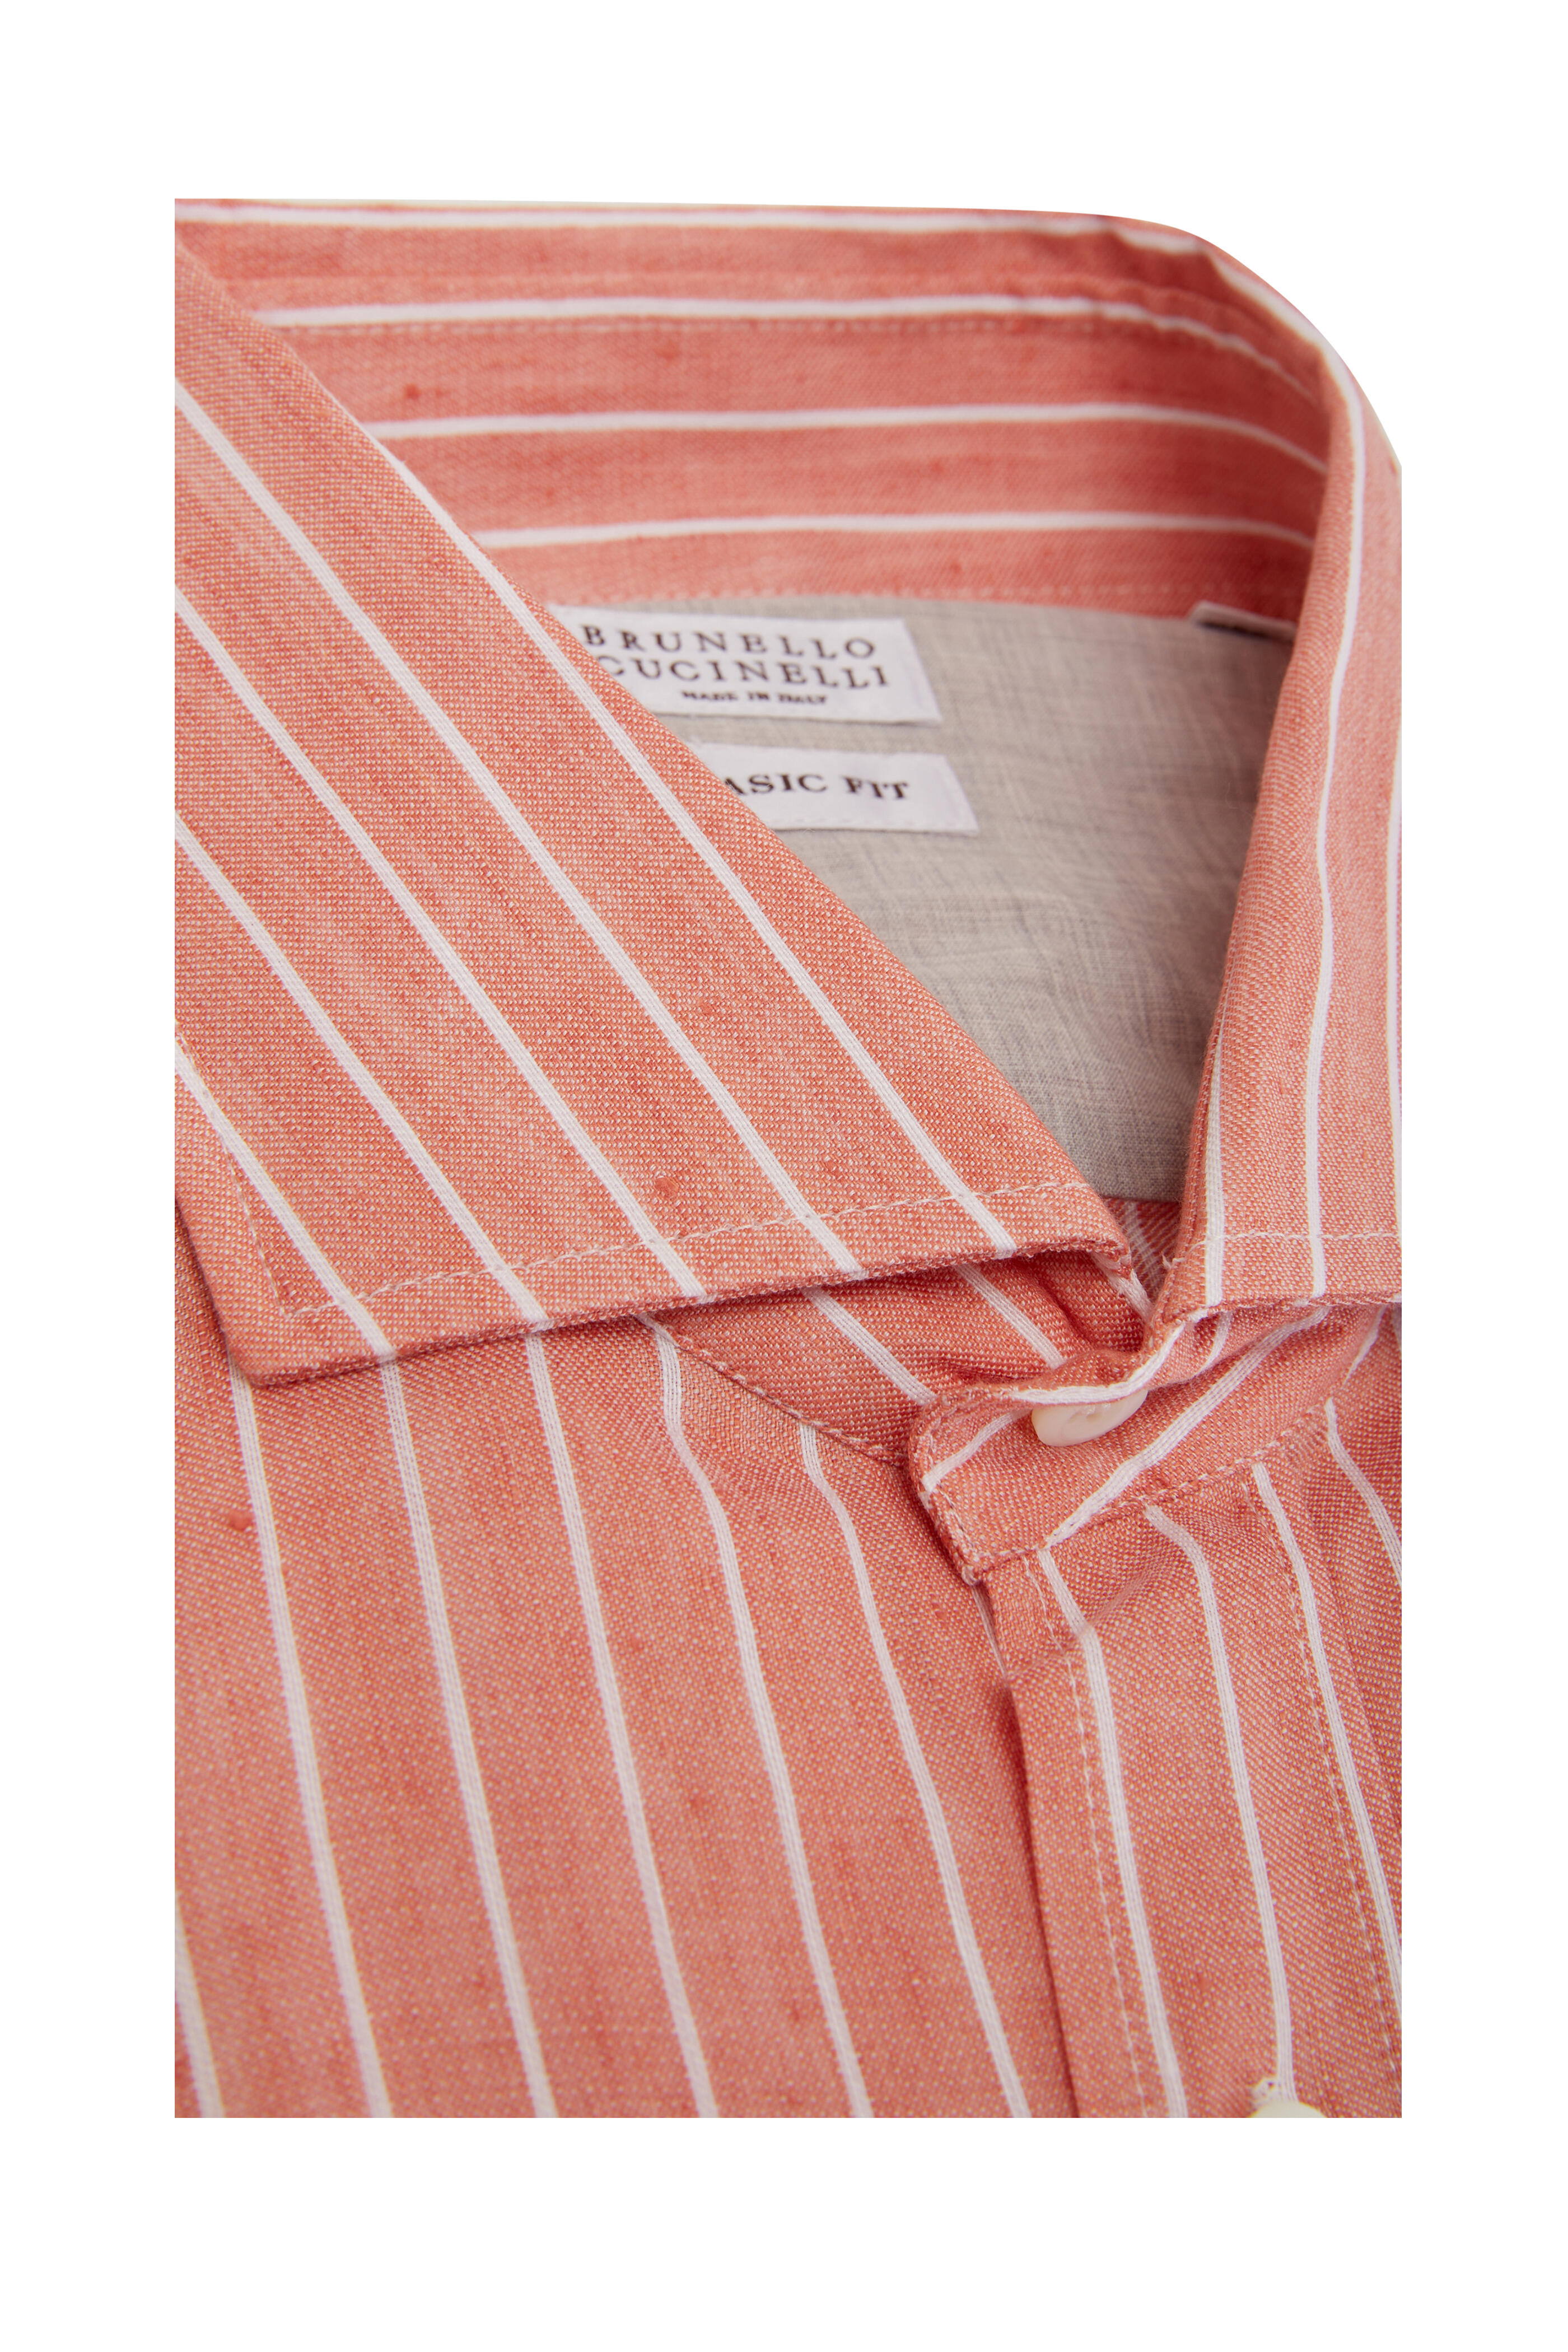 Brunello Cucinelli Striped Long Sleeve Dress Shirt